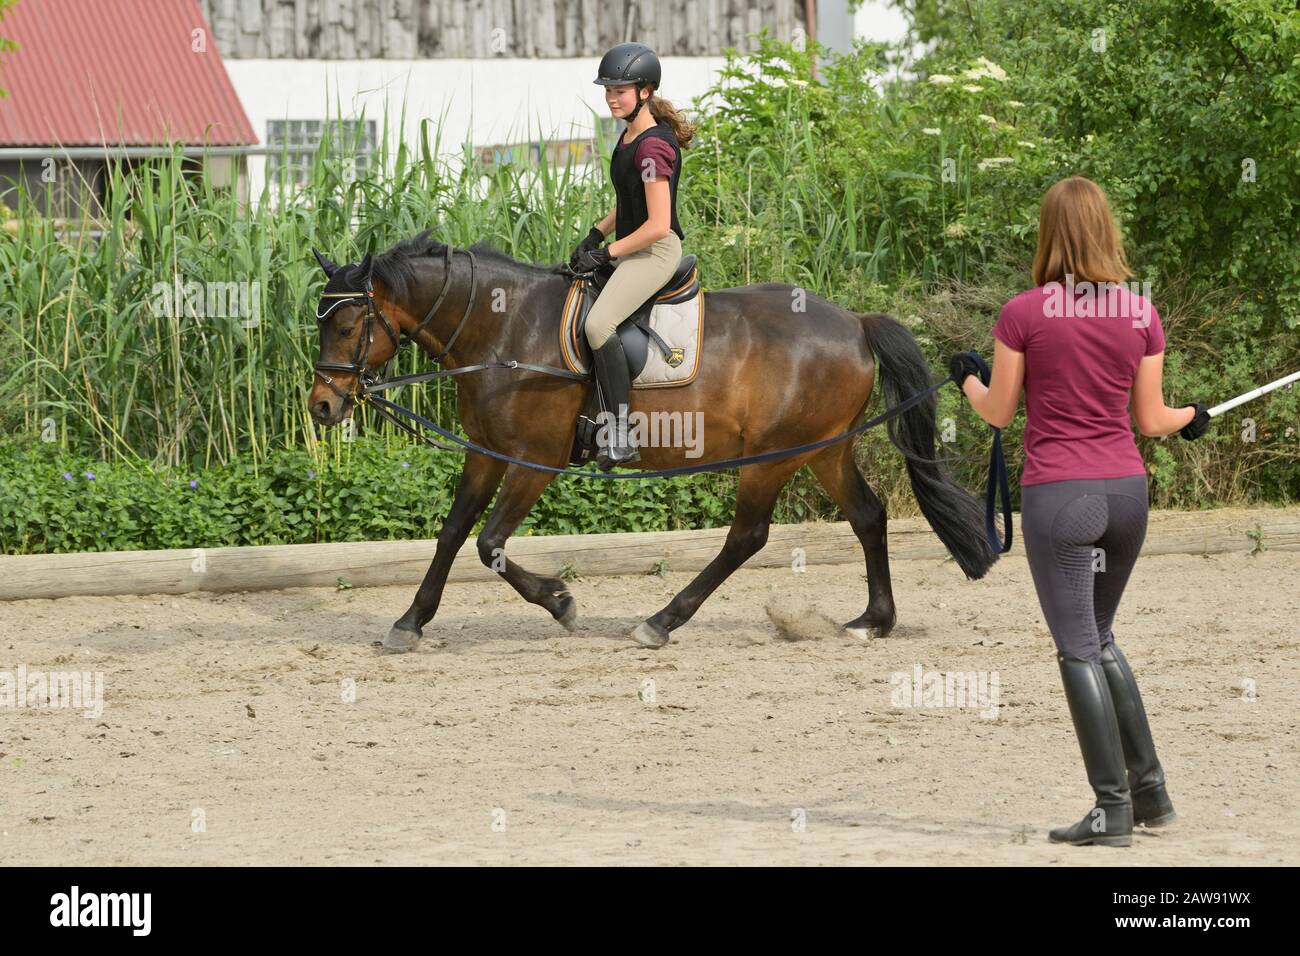 Ausfallstunde, Mädchen mit Helm und Rückenprotektor auf deutschem Pony reiten Stockfoto